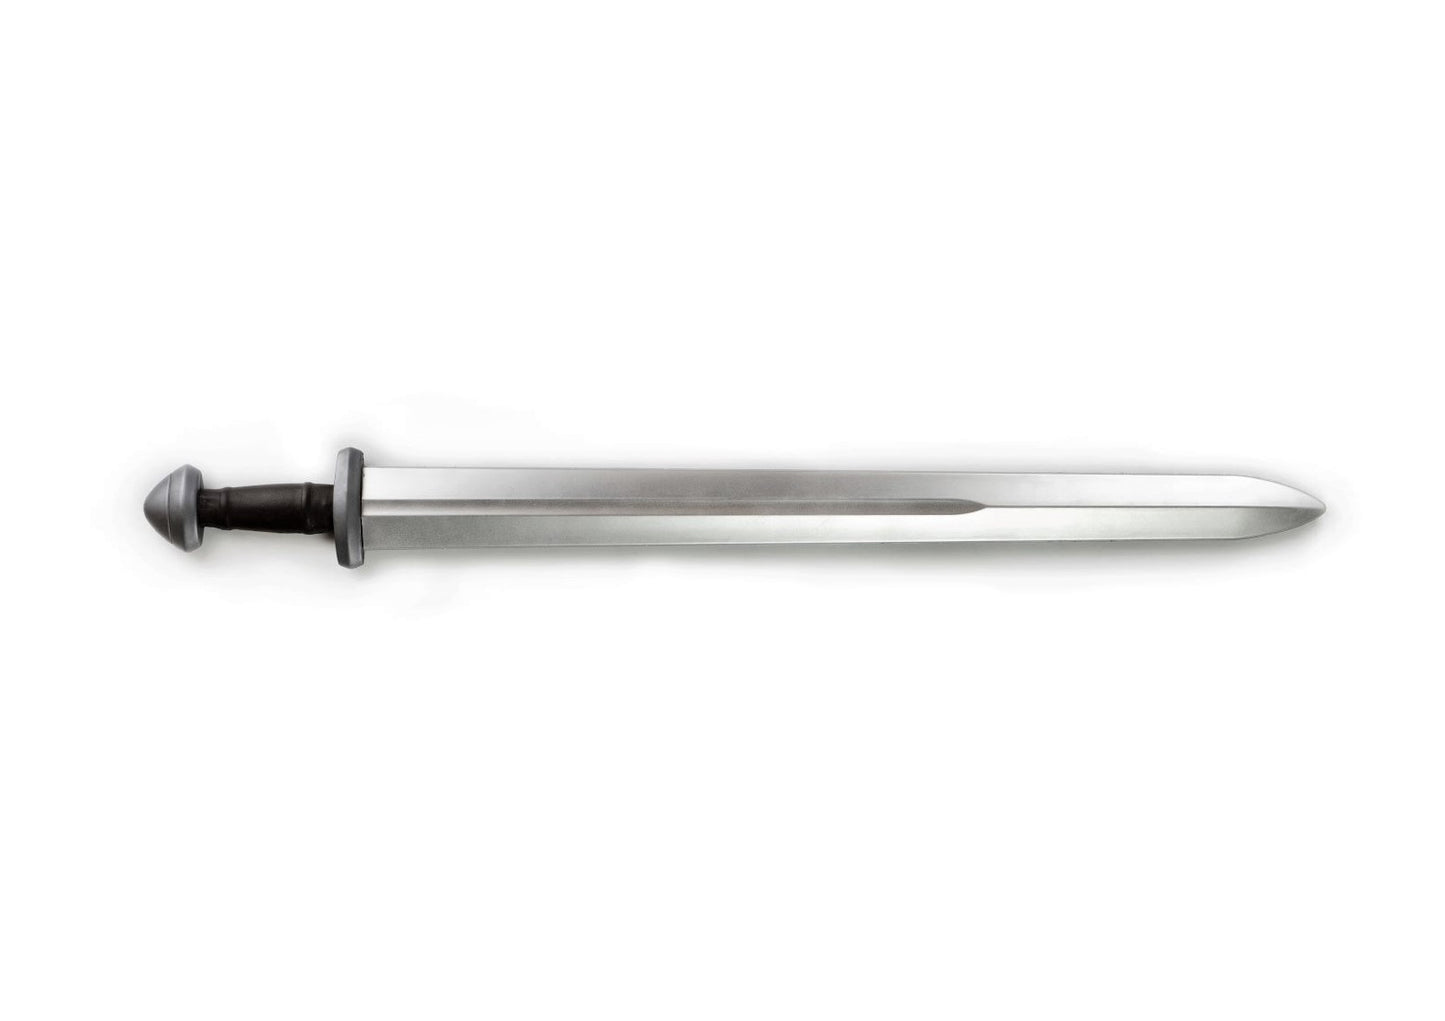 Viking sword - type H